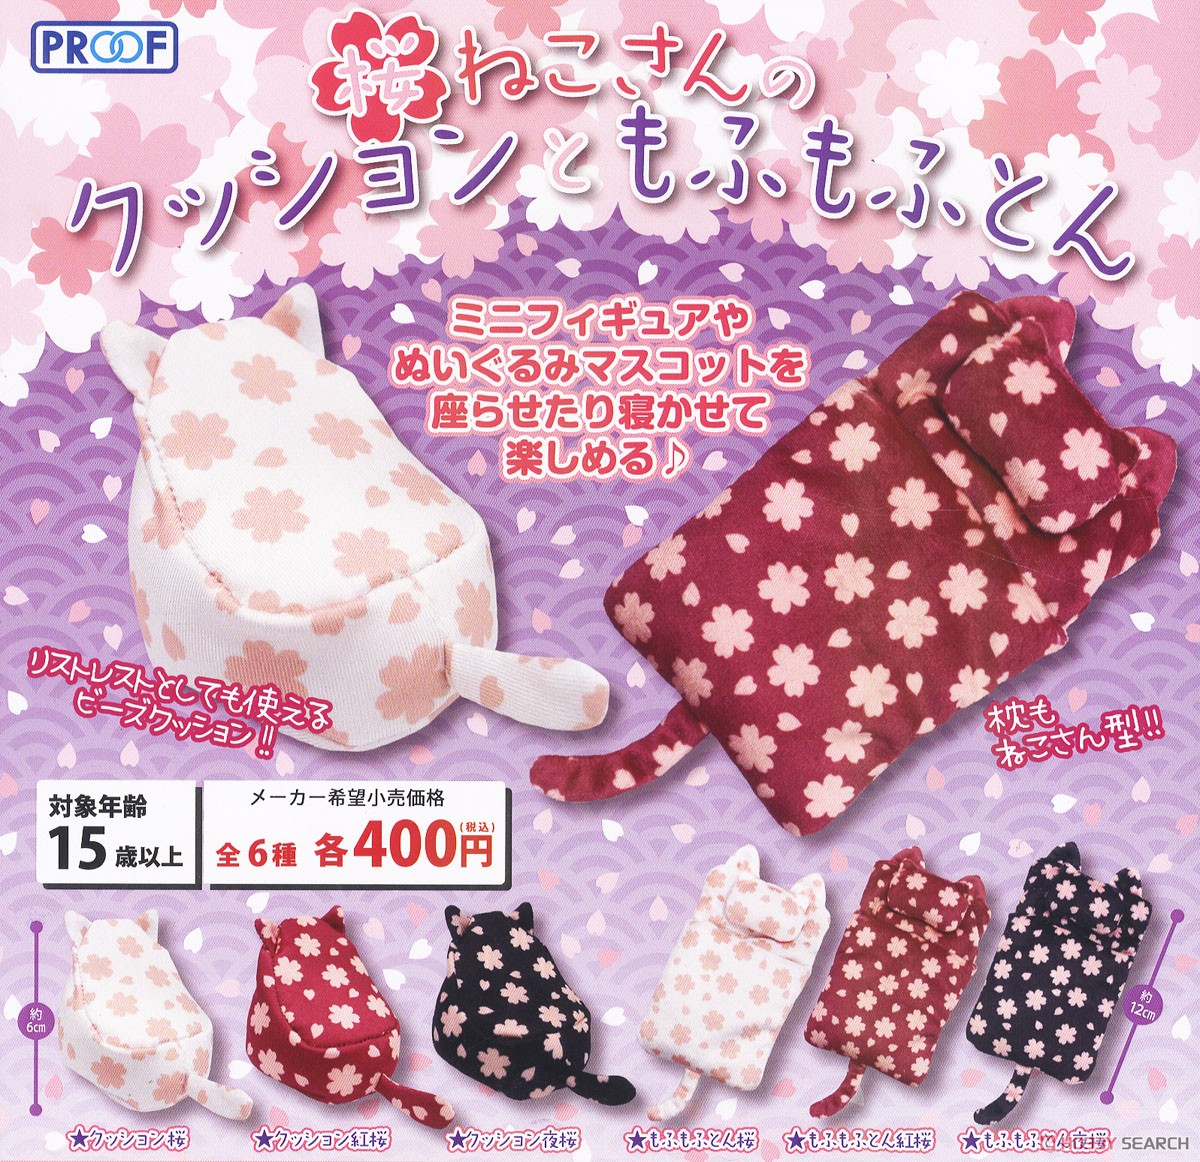 Cushion & Futon of Sakura Nekosan (Toy) Other picture1